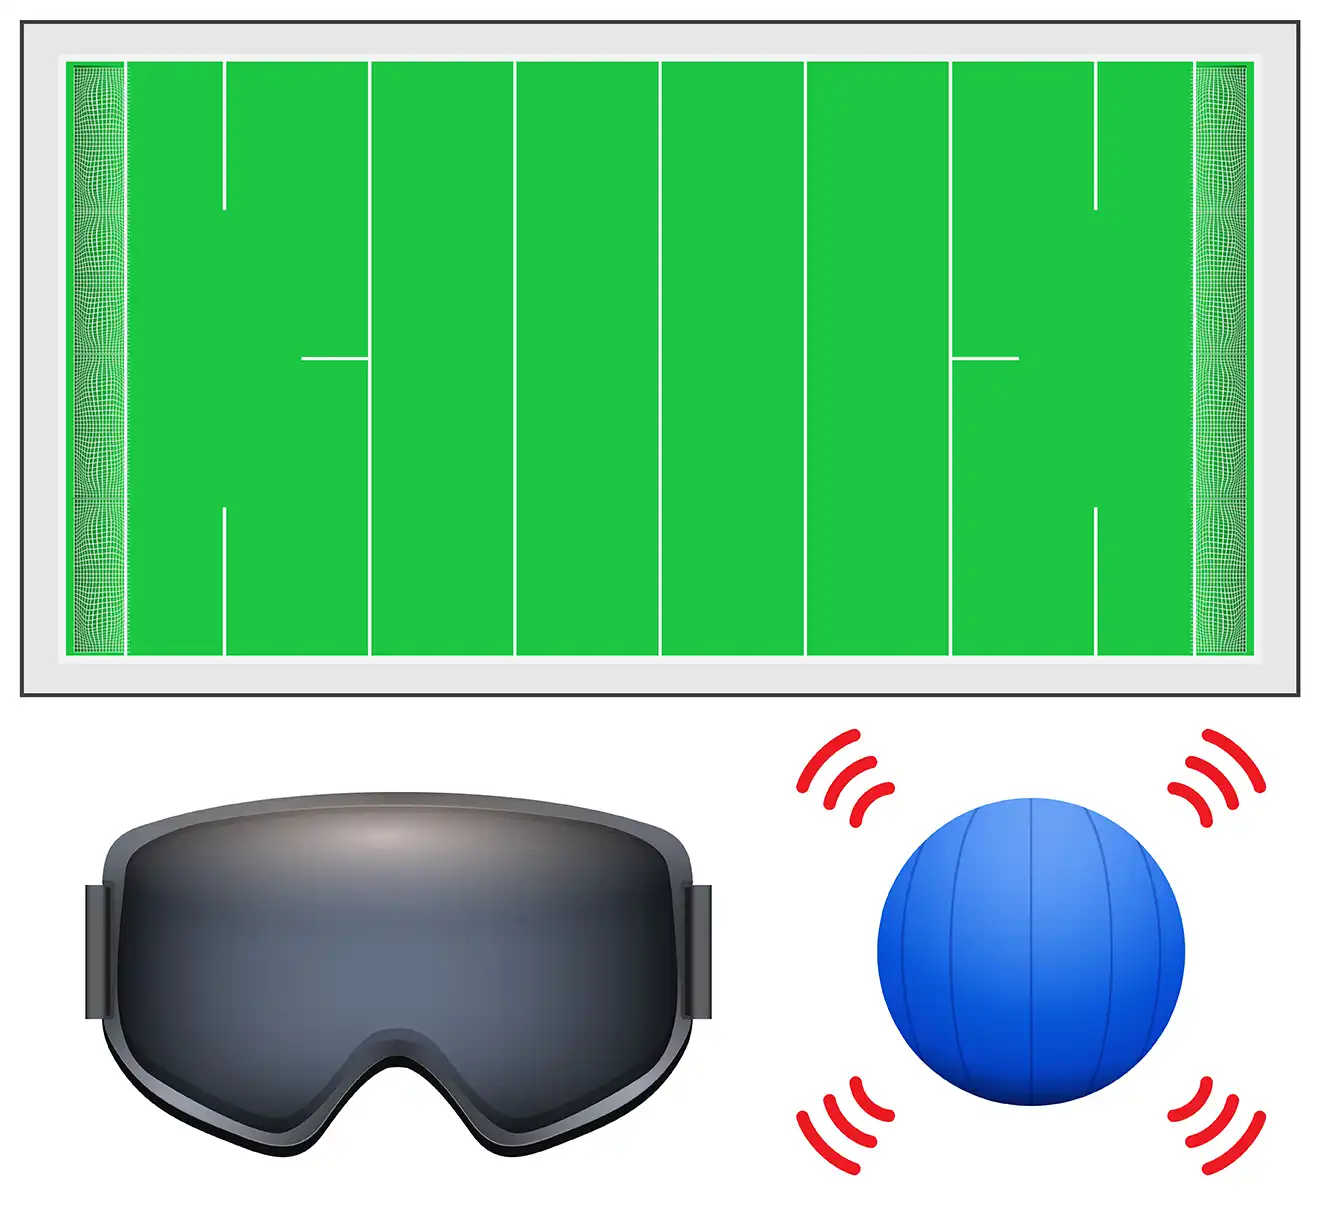 Illustrasjon av utstyr til Goalball